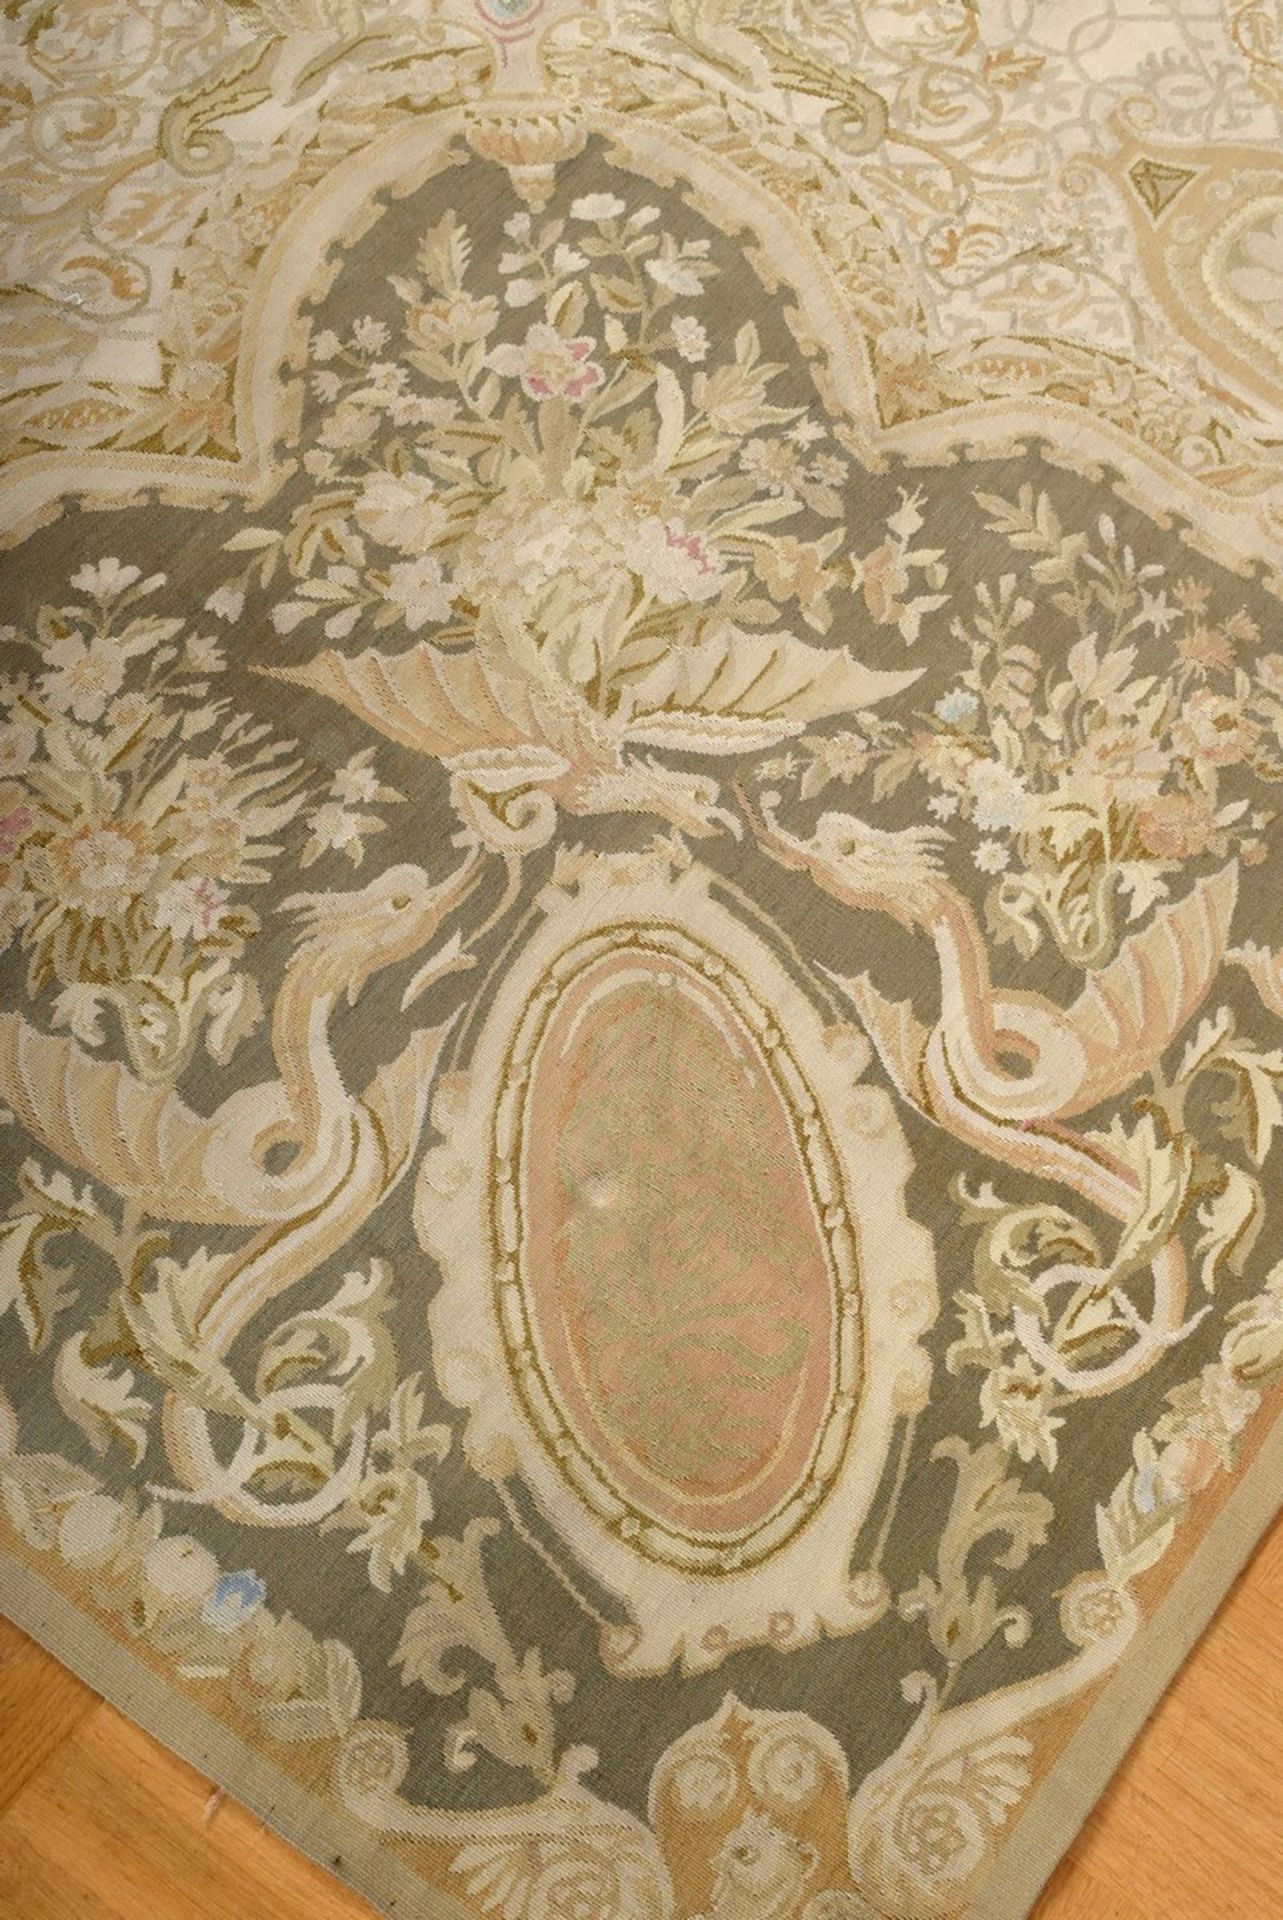 Großer Aubusson Teppich in Grün- und Beigetönen nach altem Vorbild, 20.Jh., 280x310cm - Bild 7 aus 9